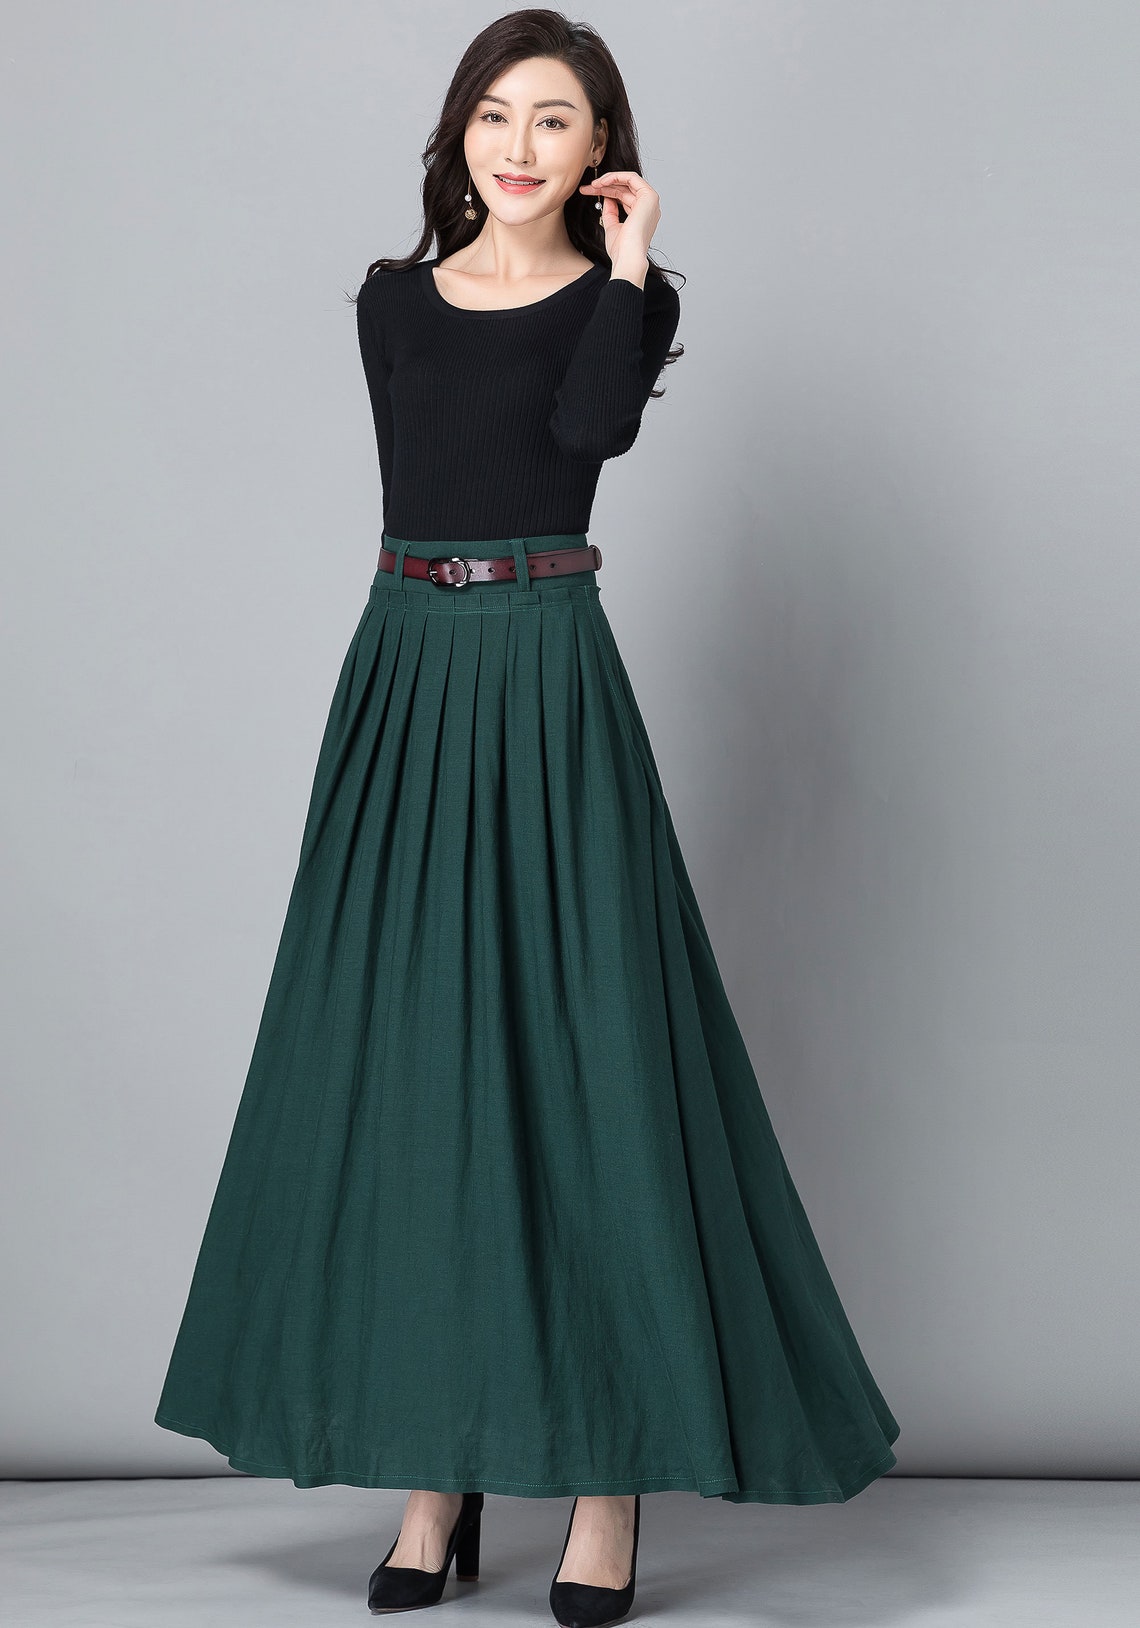 Long Maxi skirt work outfit Long Linen skirt High waist Long | Etsy